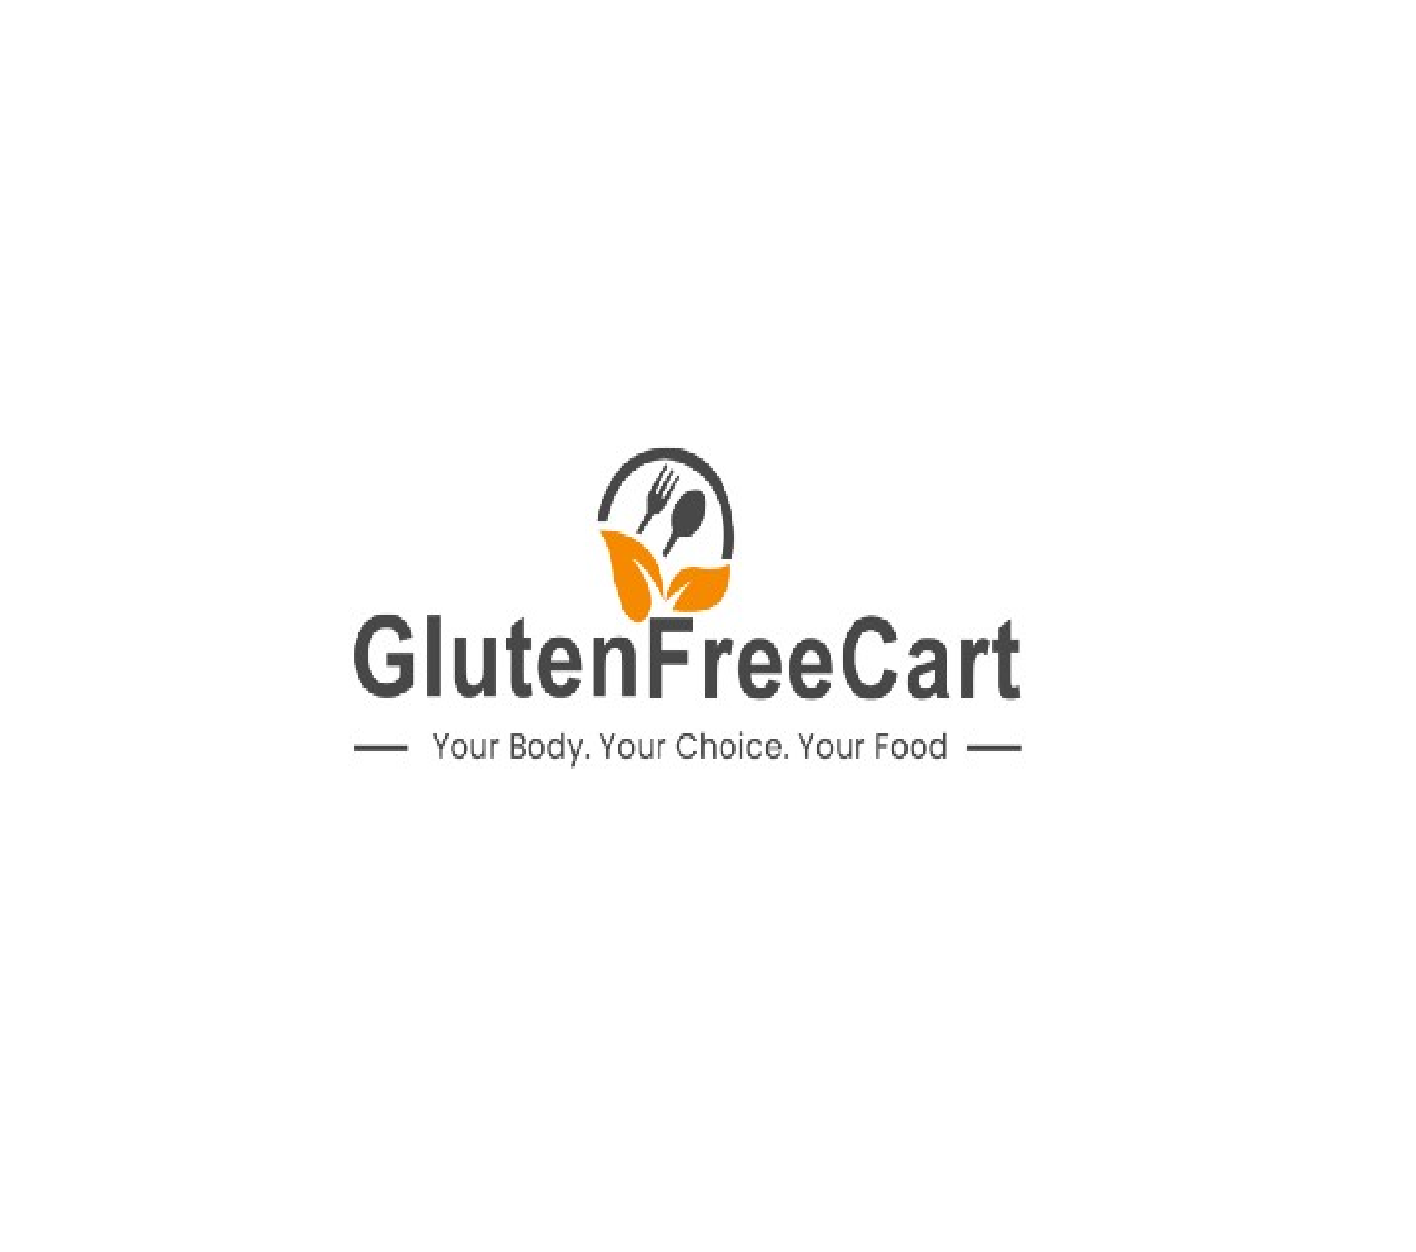 Gluten Free Cart